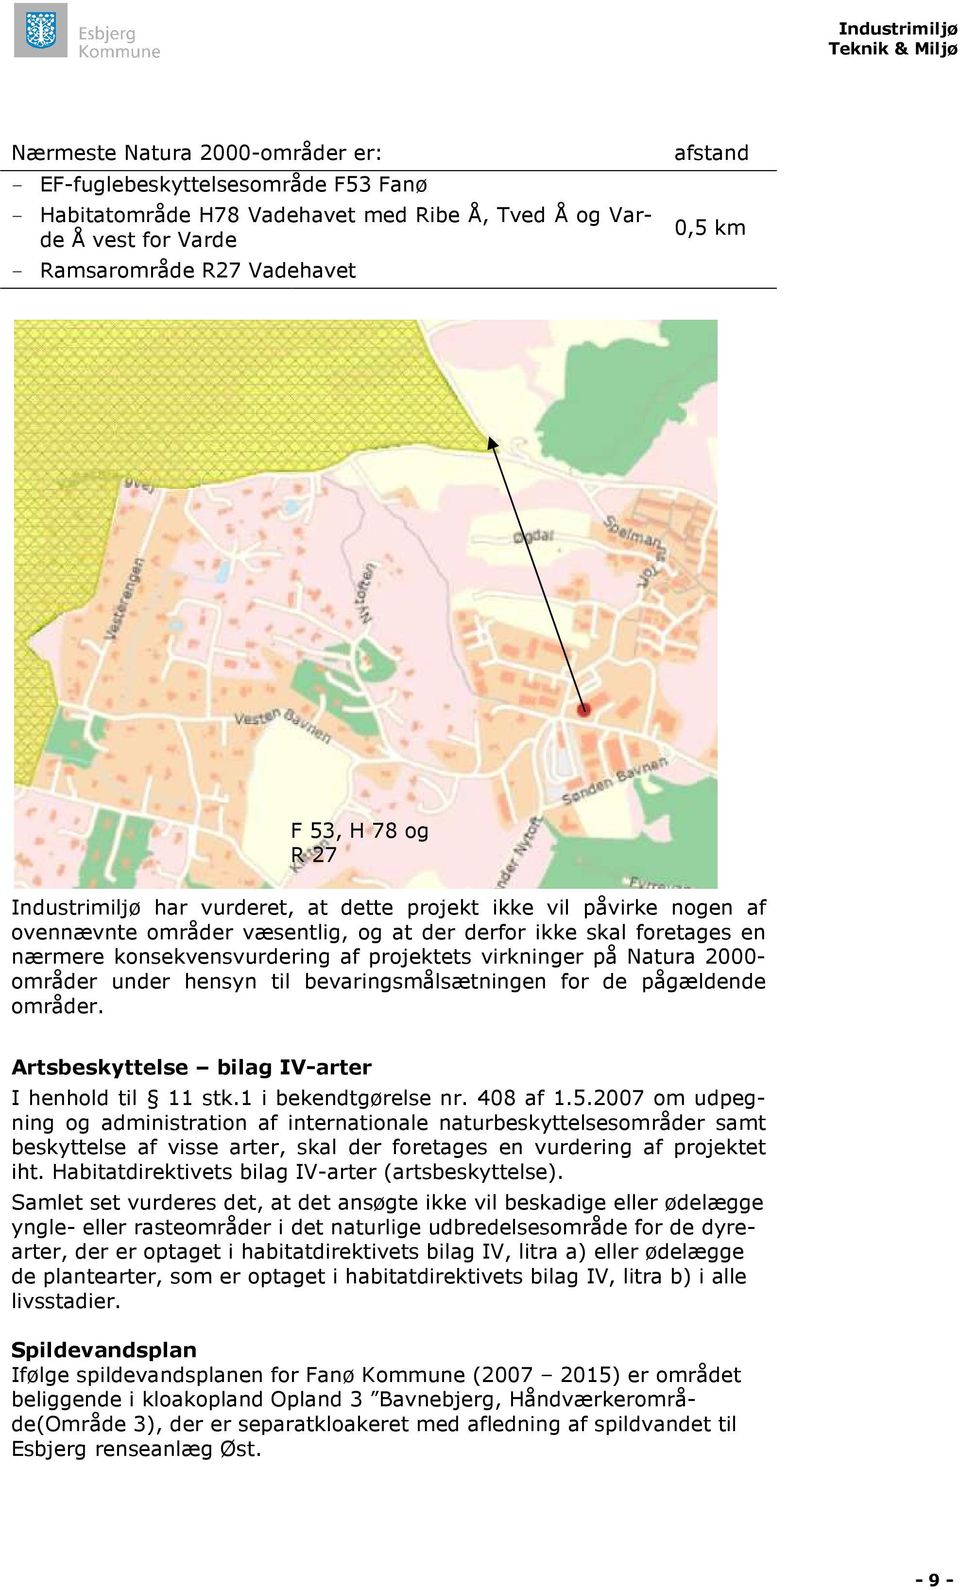 virkninger på Natura 2000- områder under hensyn til bevaringsmålsætningen for de pågældende områder. Artsbeskyttelse bilag IV-arter I henhold til 11 stk.1 i bekendtgørelse nr. 408 af 1.5.